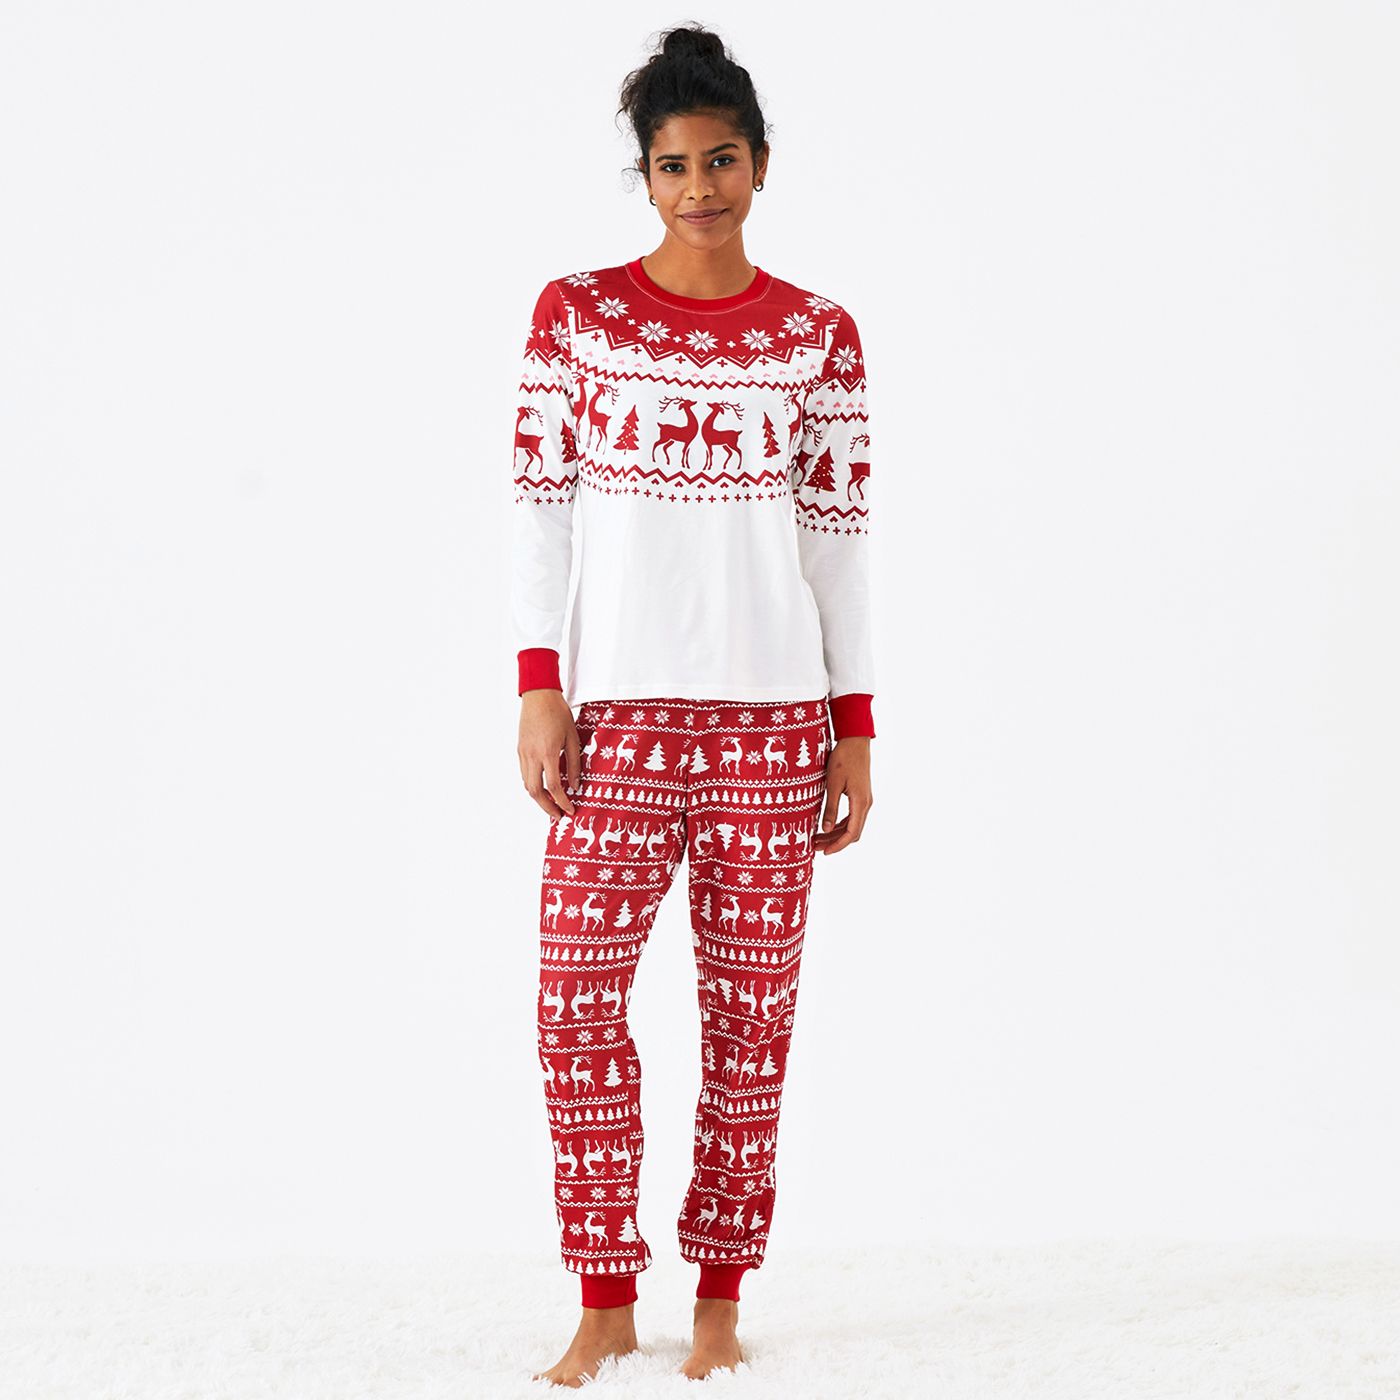 

Christmas Reindeer and Snowflake Print Family Matching Pajamas Sets (Flame Resistant)